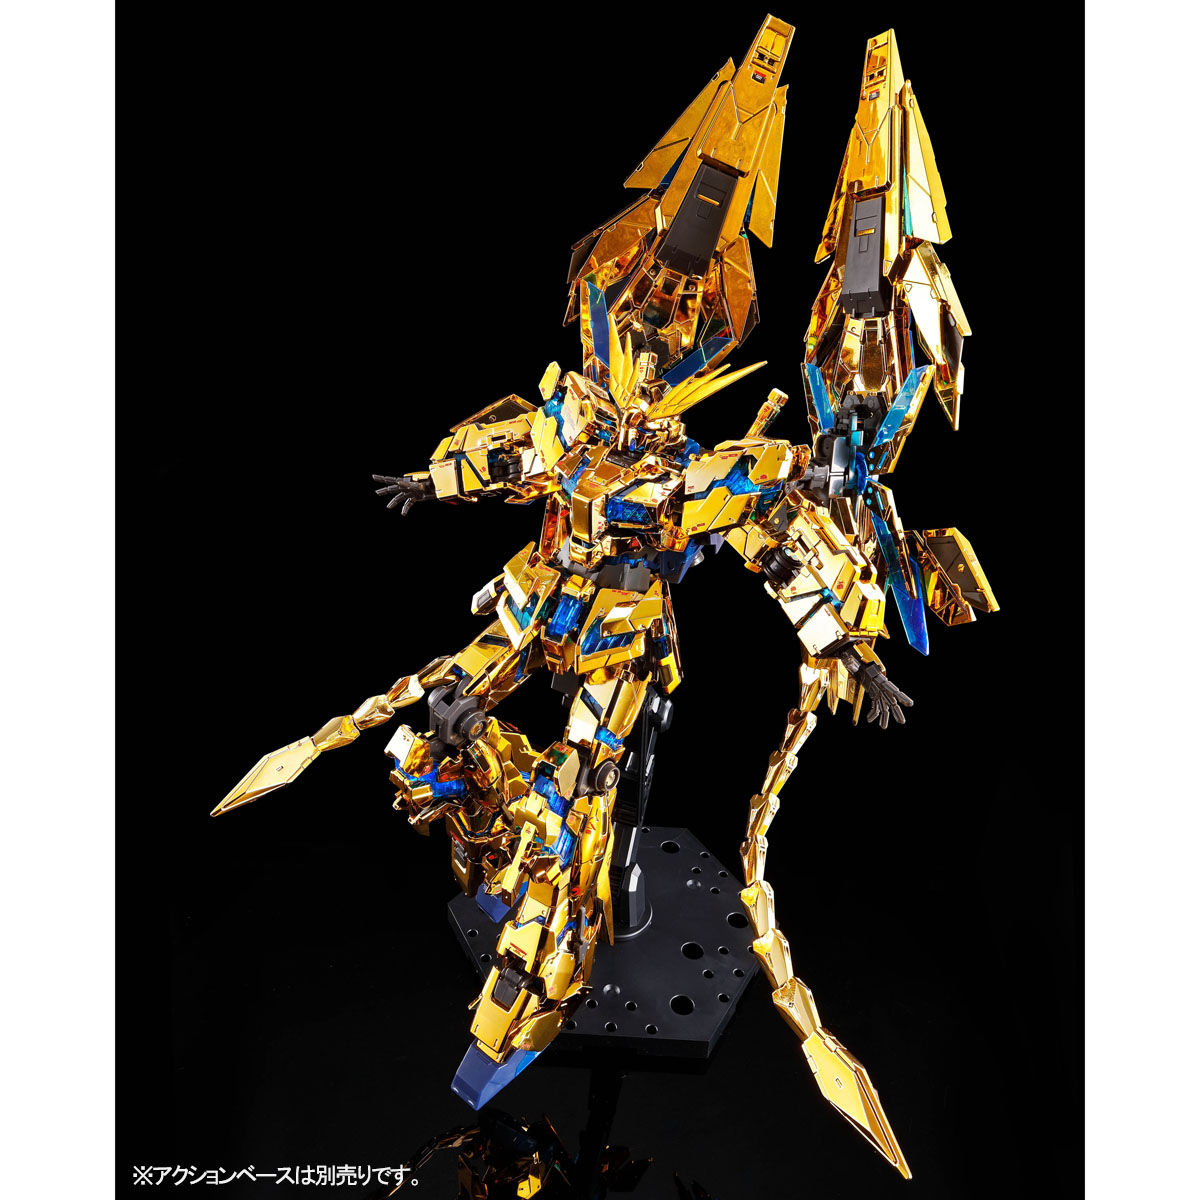 RG 1/144 RX-0 Unicorn Gundam 03 Phenex(Narrative Gold Coating)